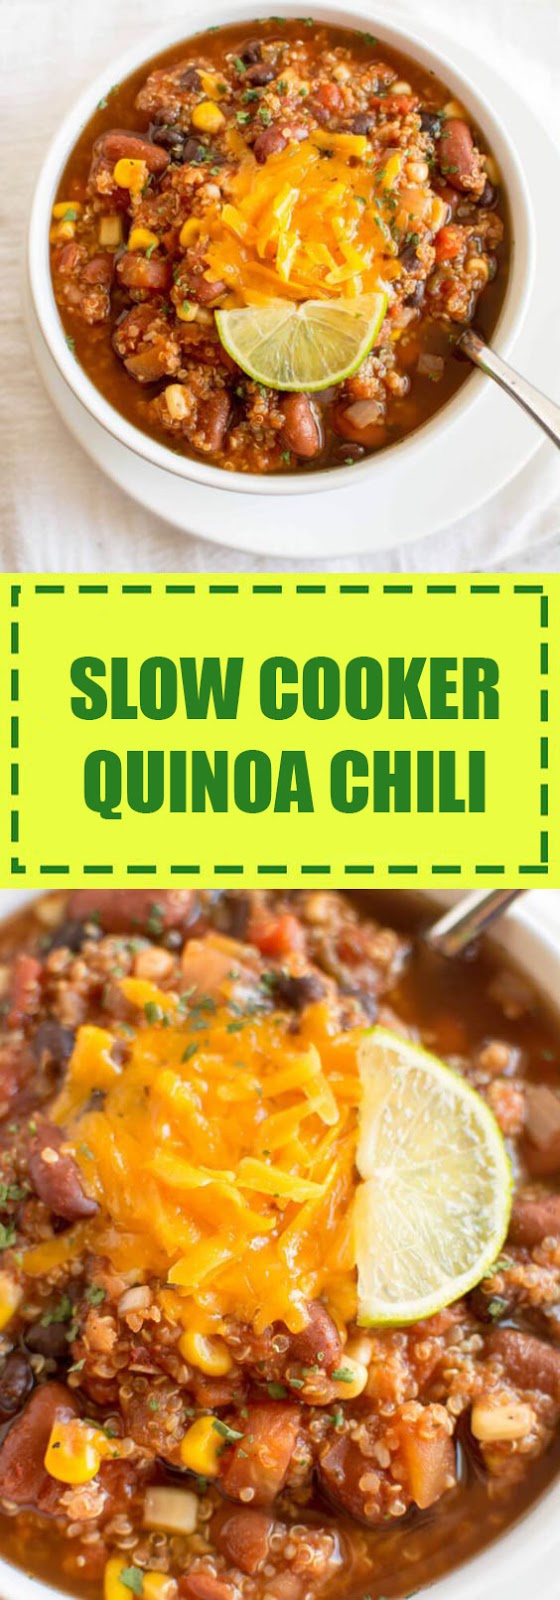 Slow Cooker Quinoa Chili